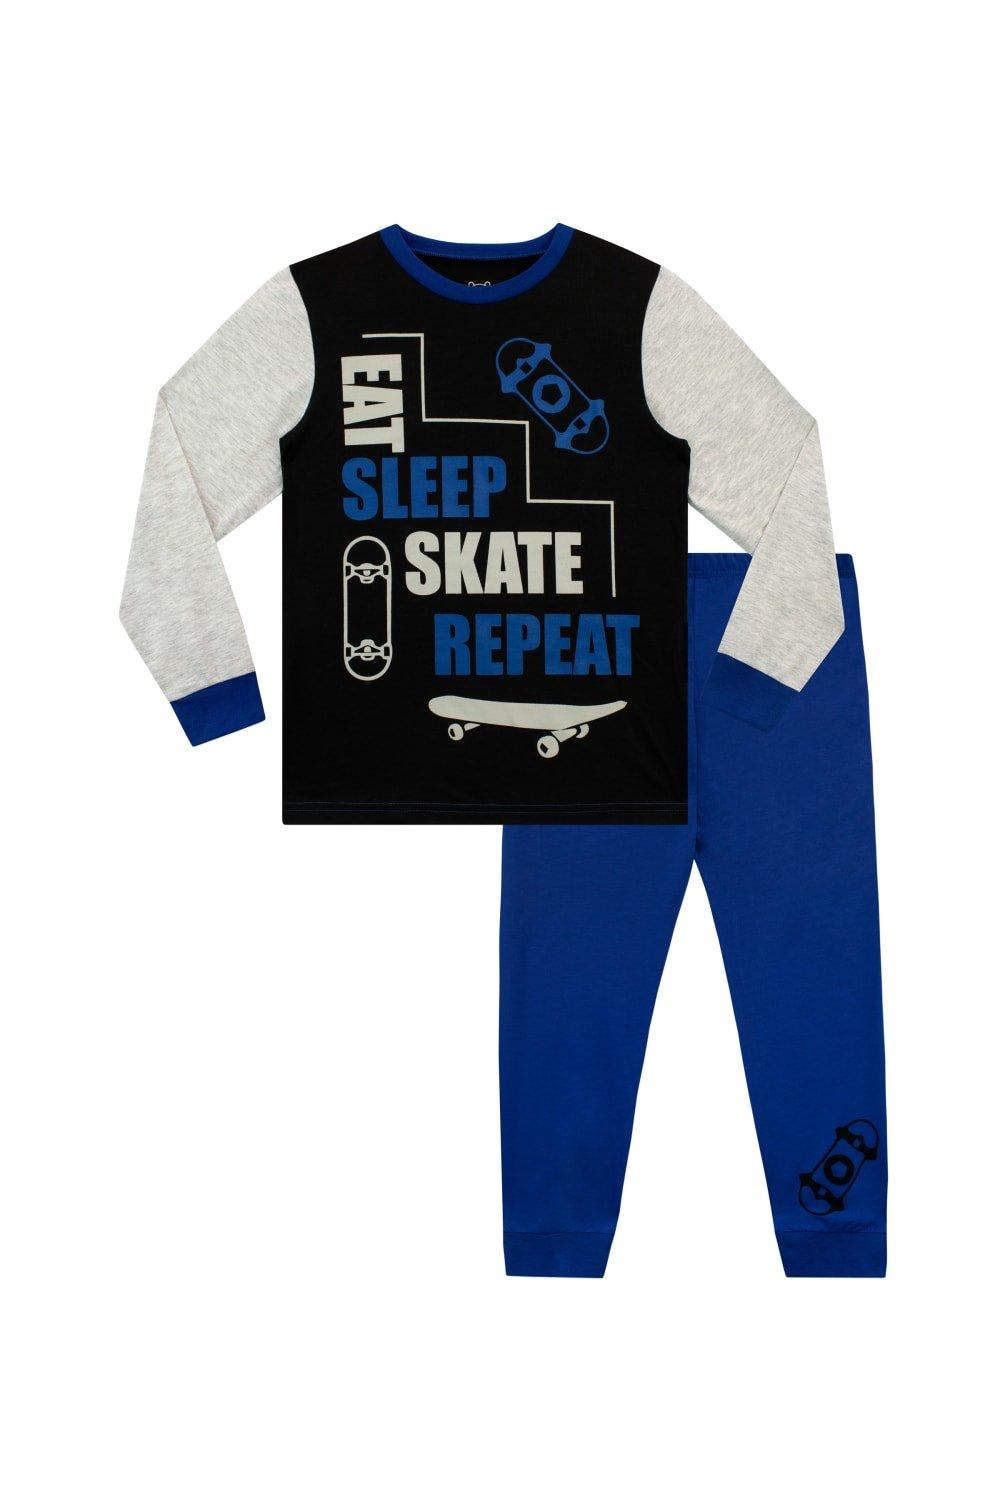 Eat Sleep Skate Pyjamas